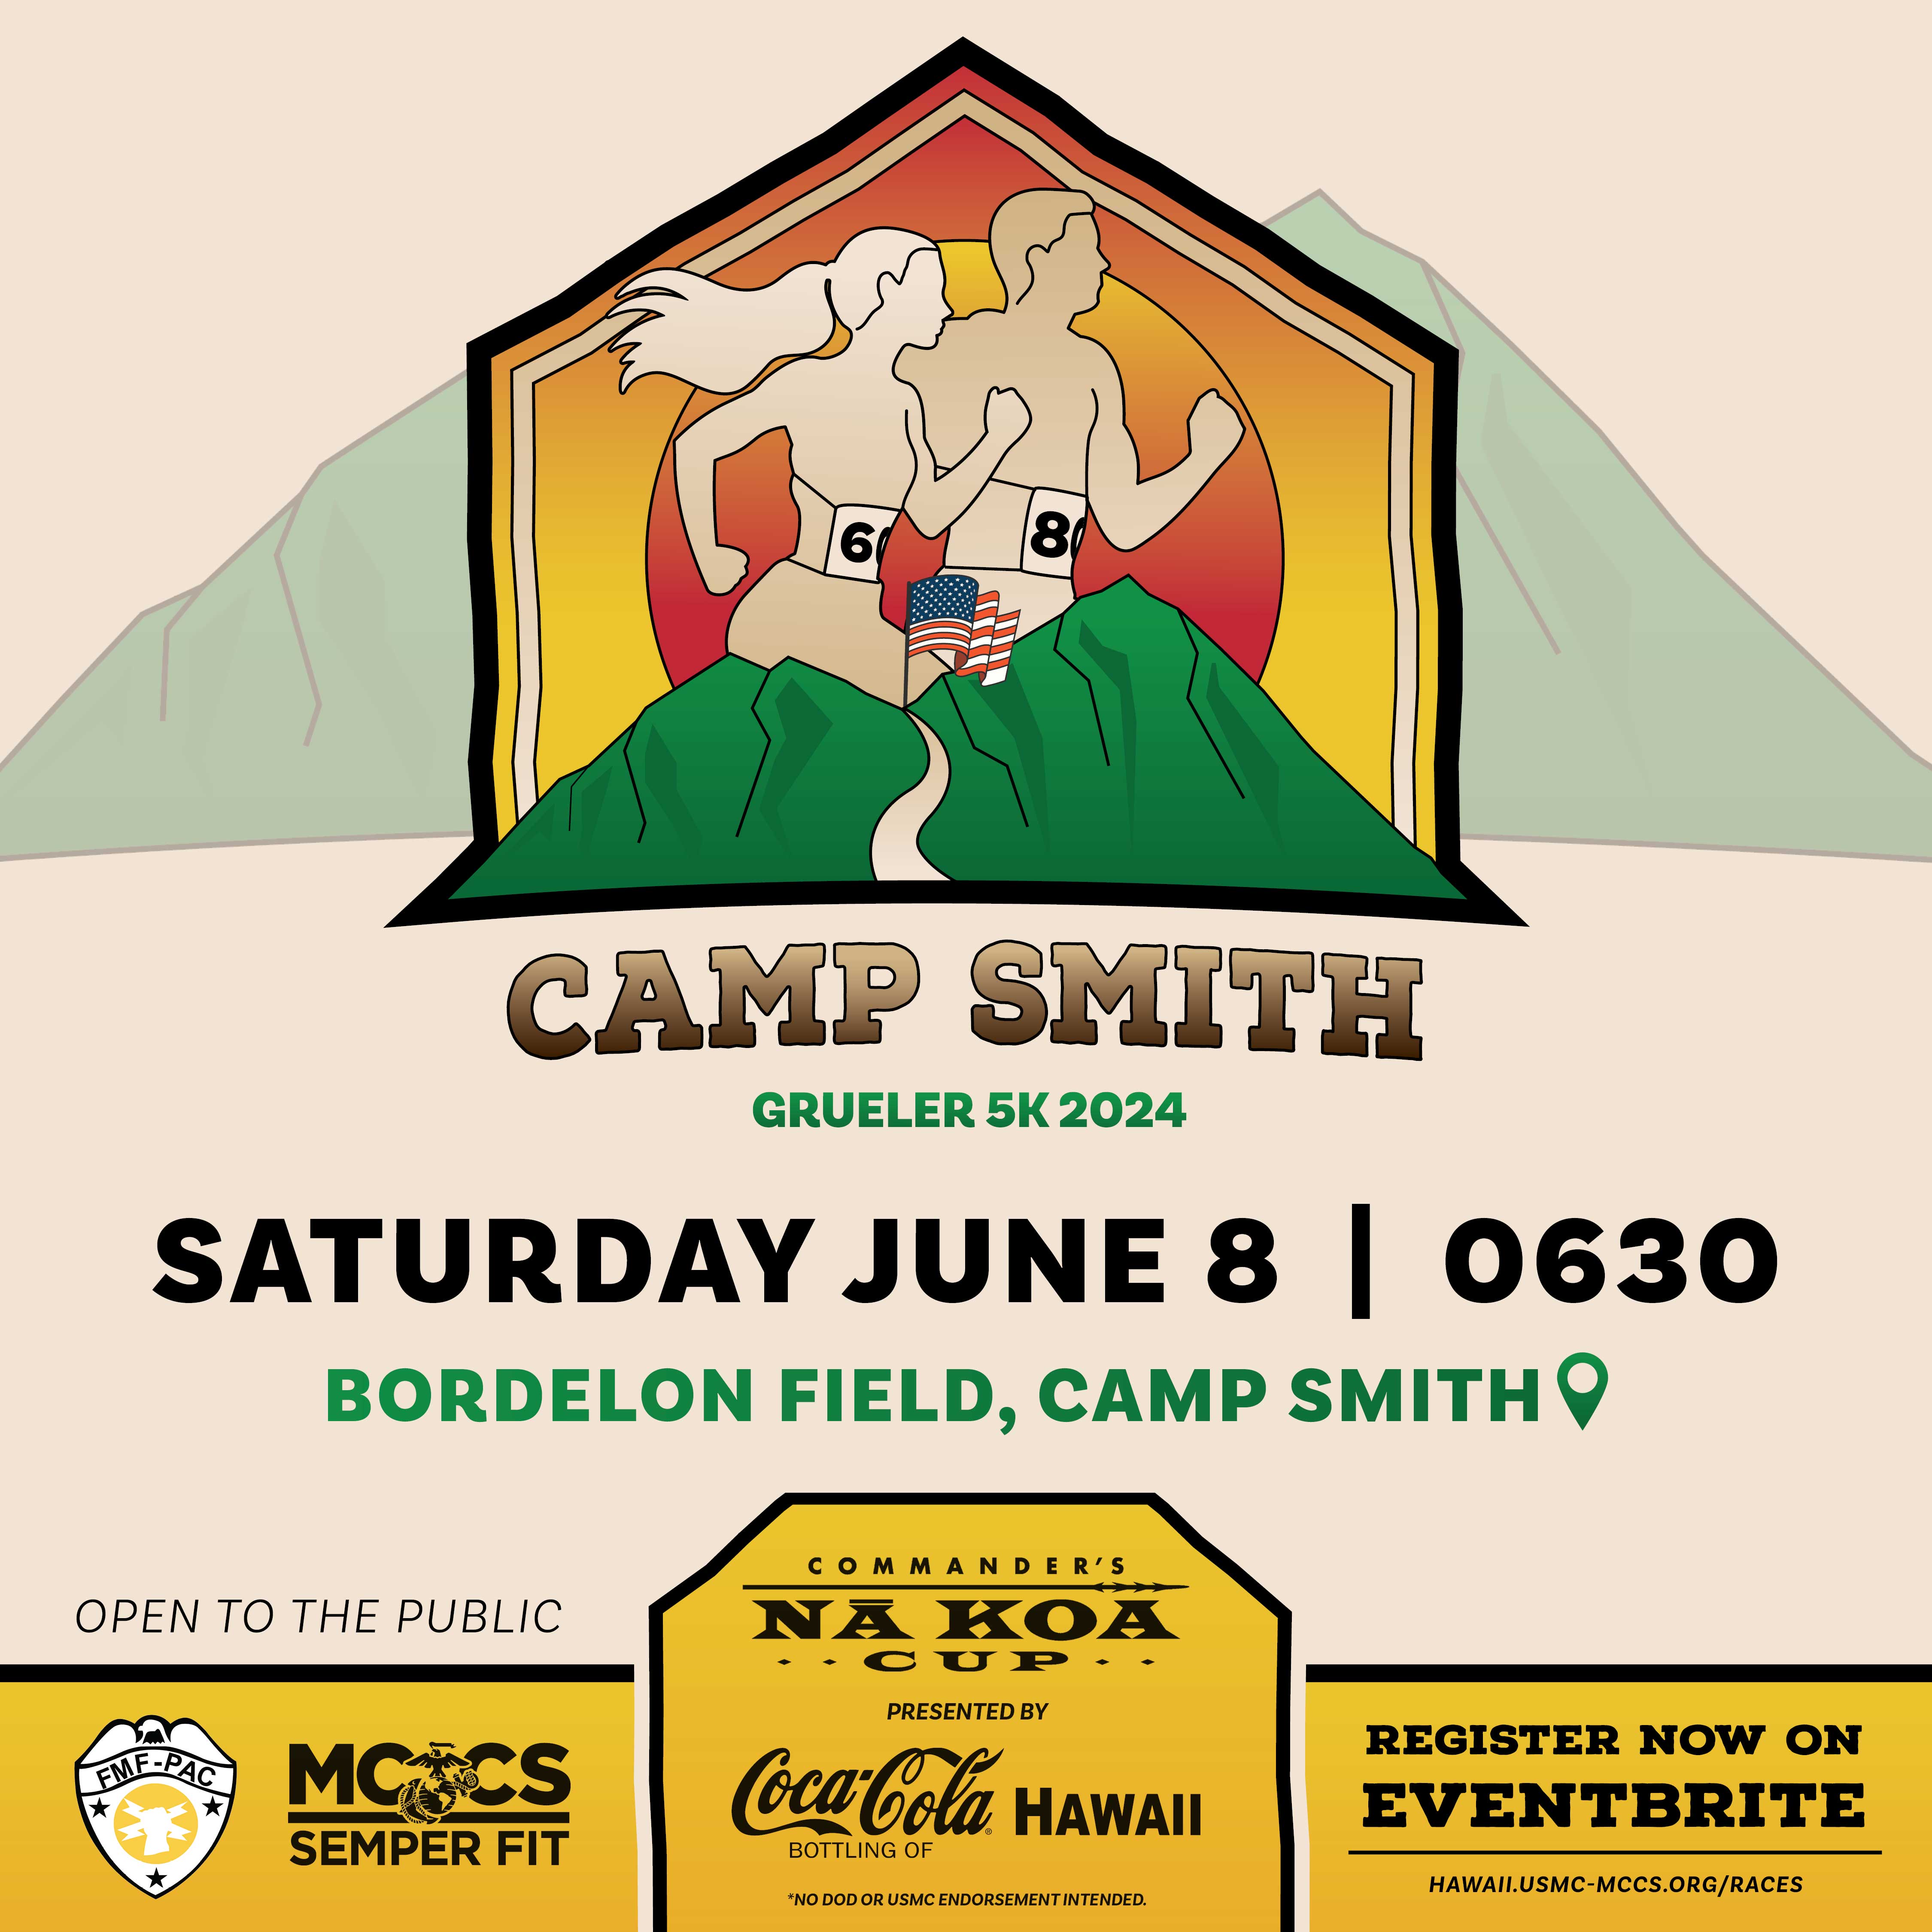 Camp Smith Grueler 5K Race